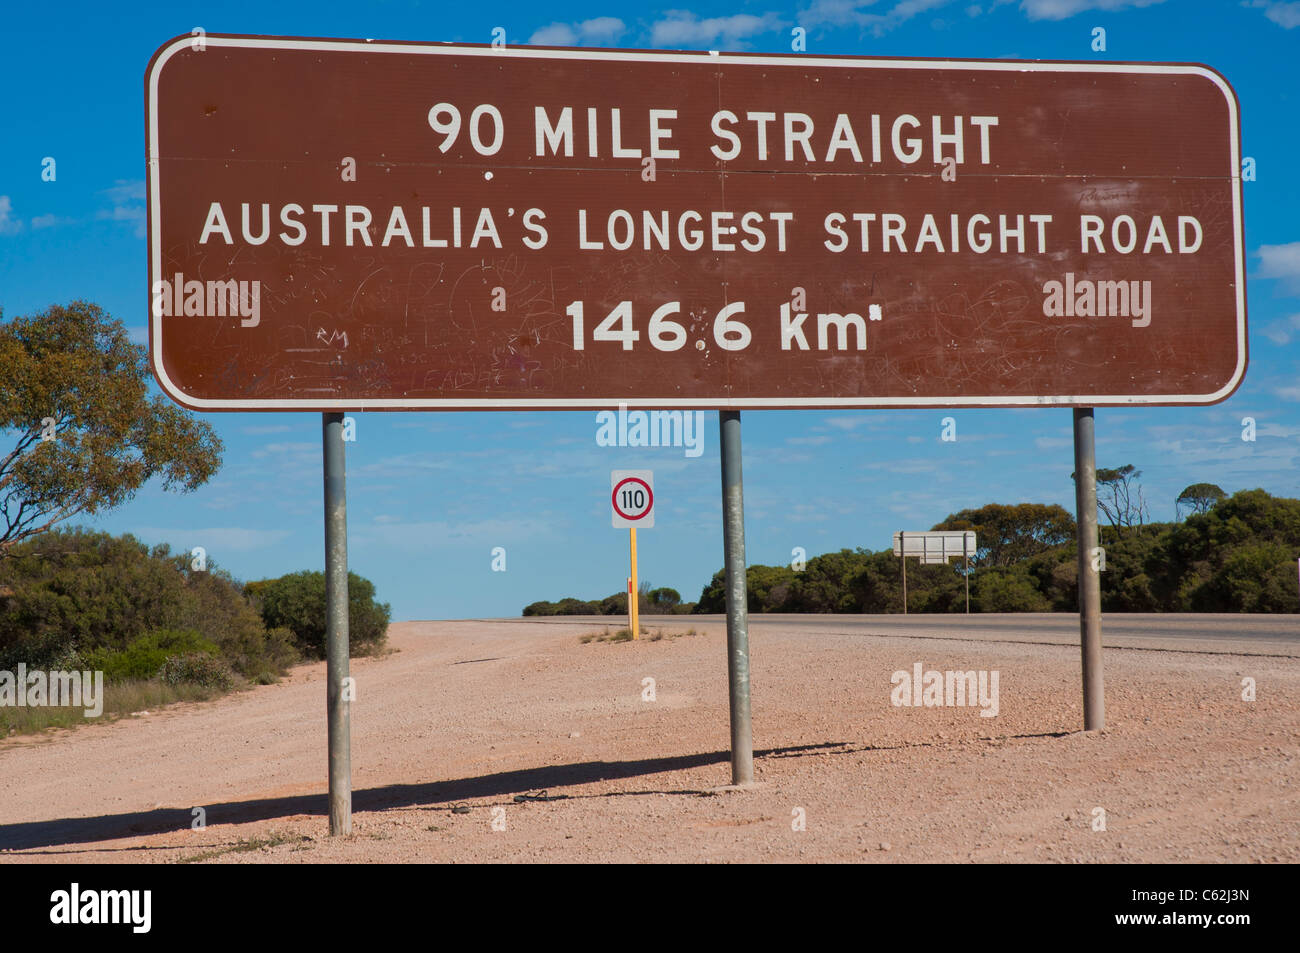 Las 90 millas en línea recta, el tramo más largo del camino recto en el continente de Australia Foto de stock